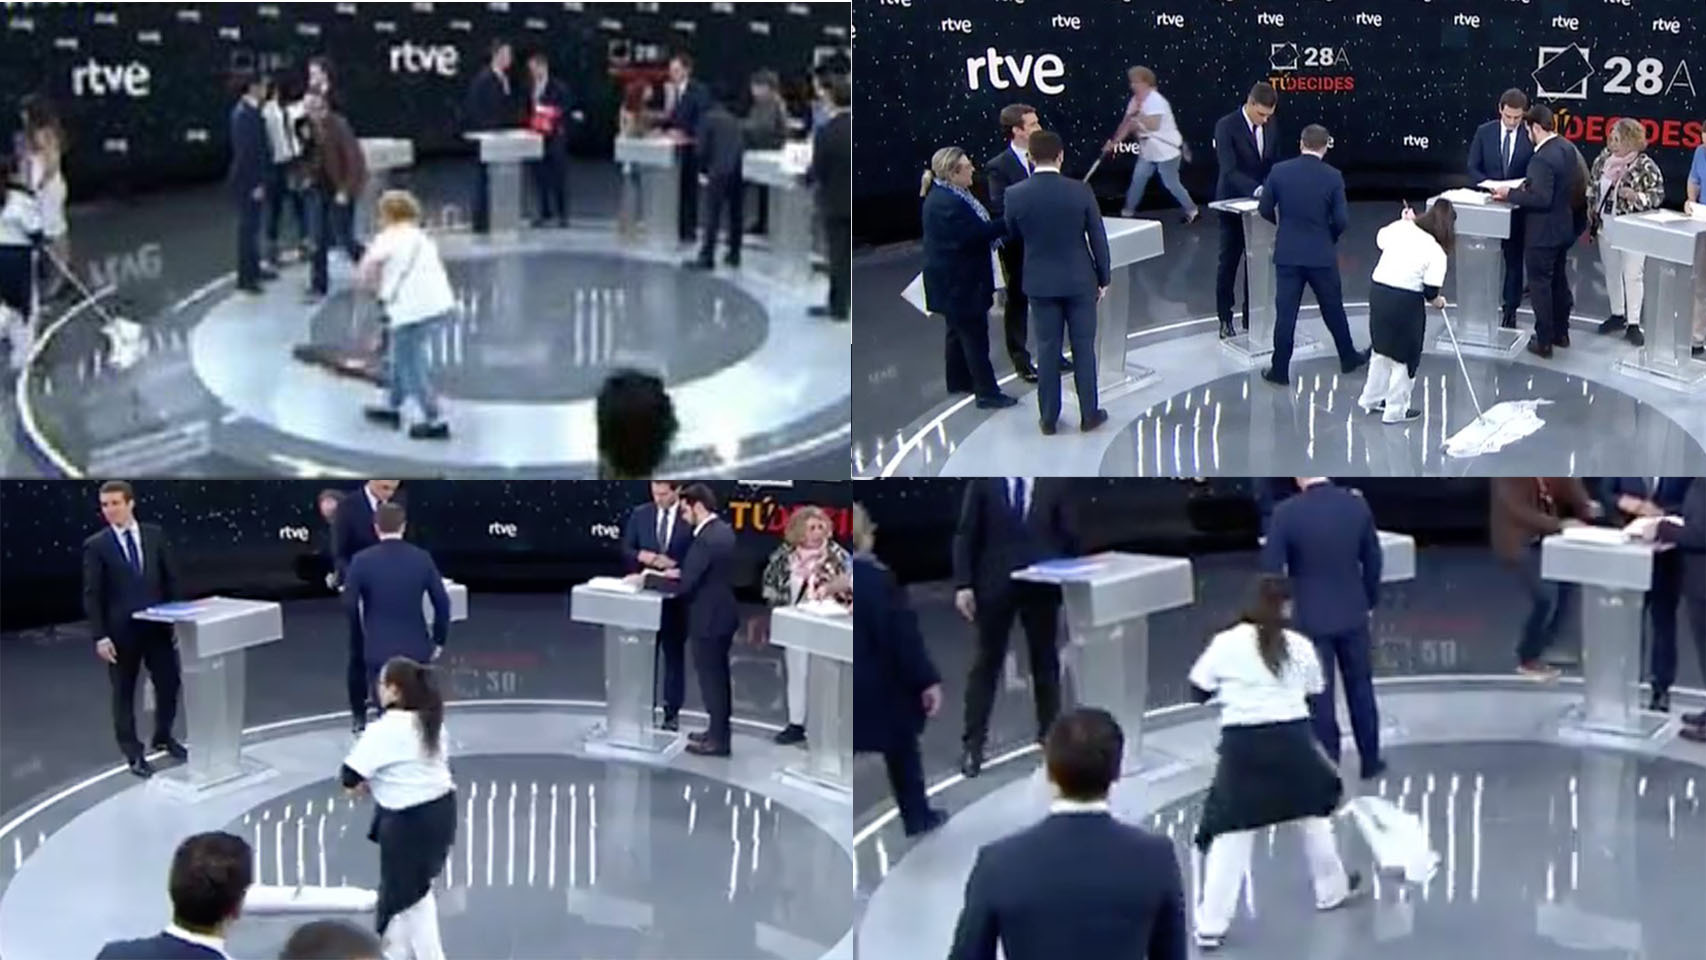 Momentos antes de que arrancara el debate en TVE, el equipo de limpieza salta al plató a ultimar los detalles.